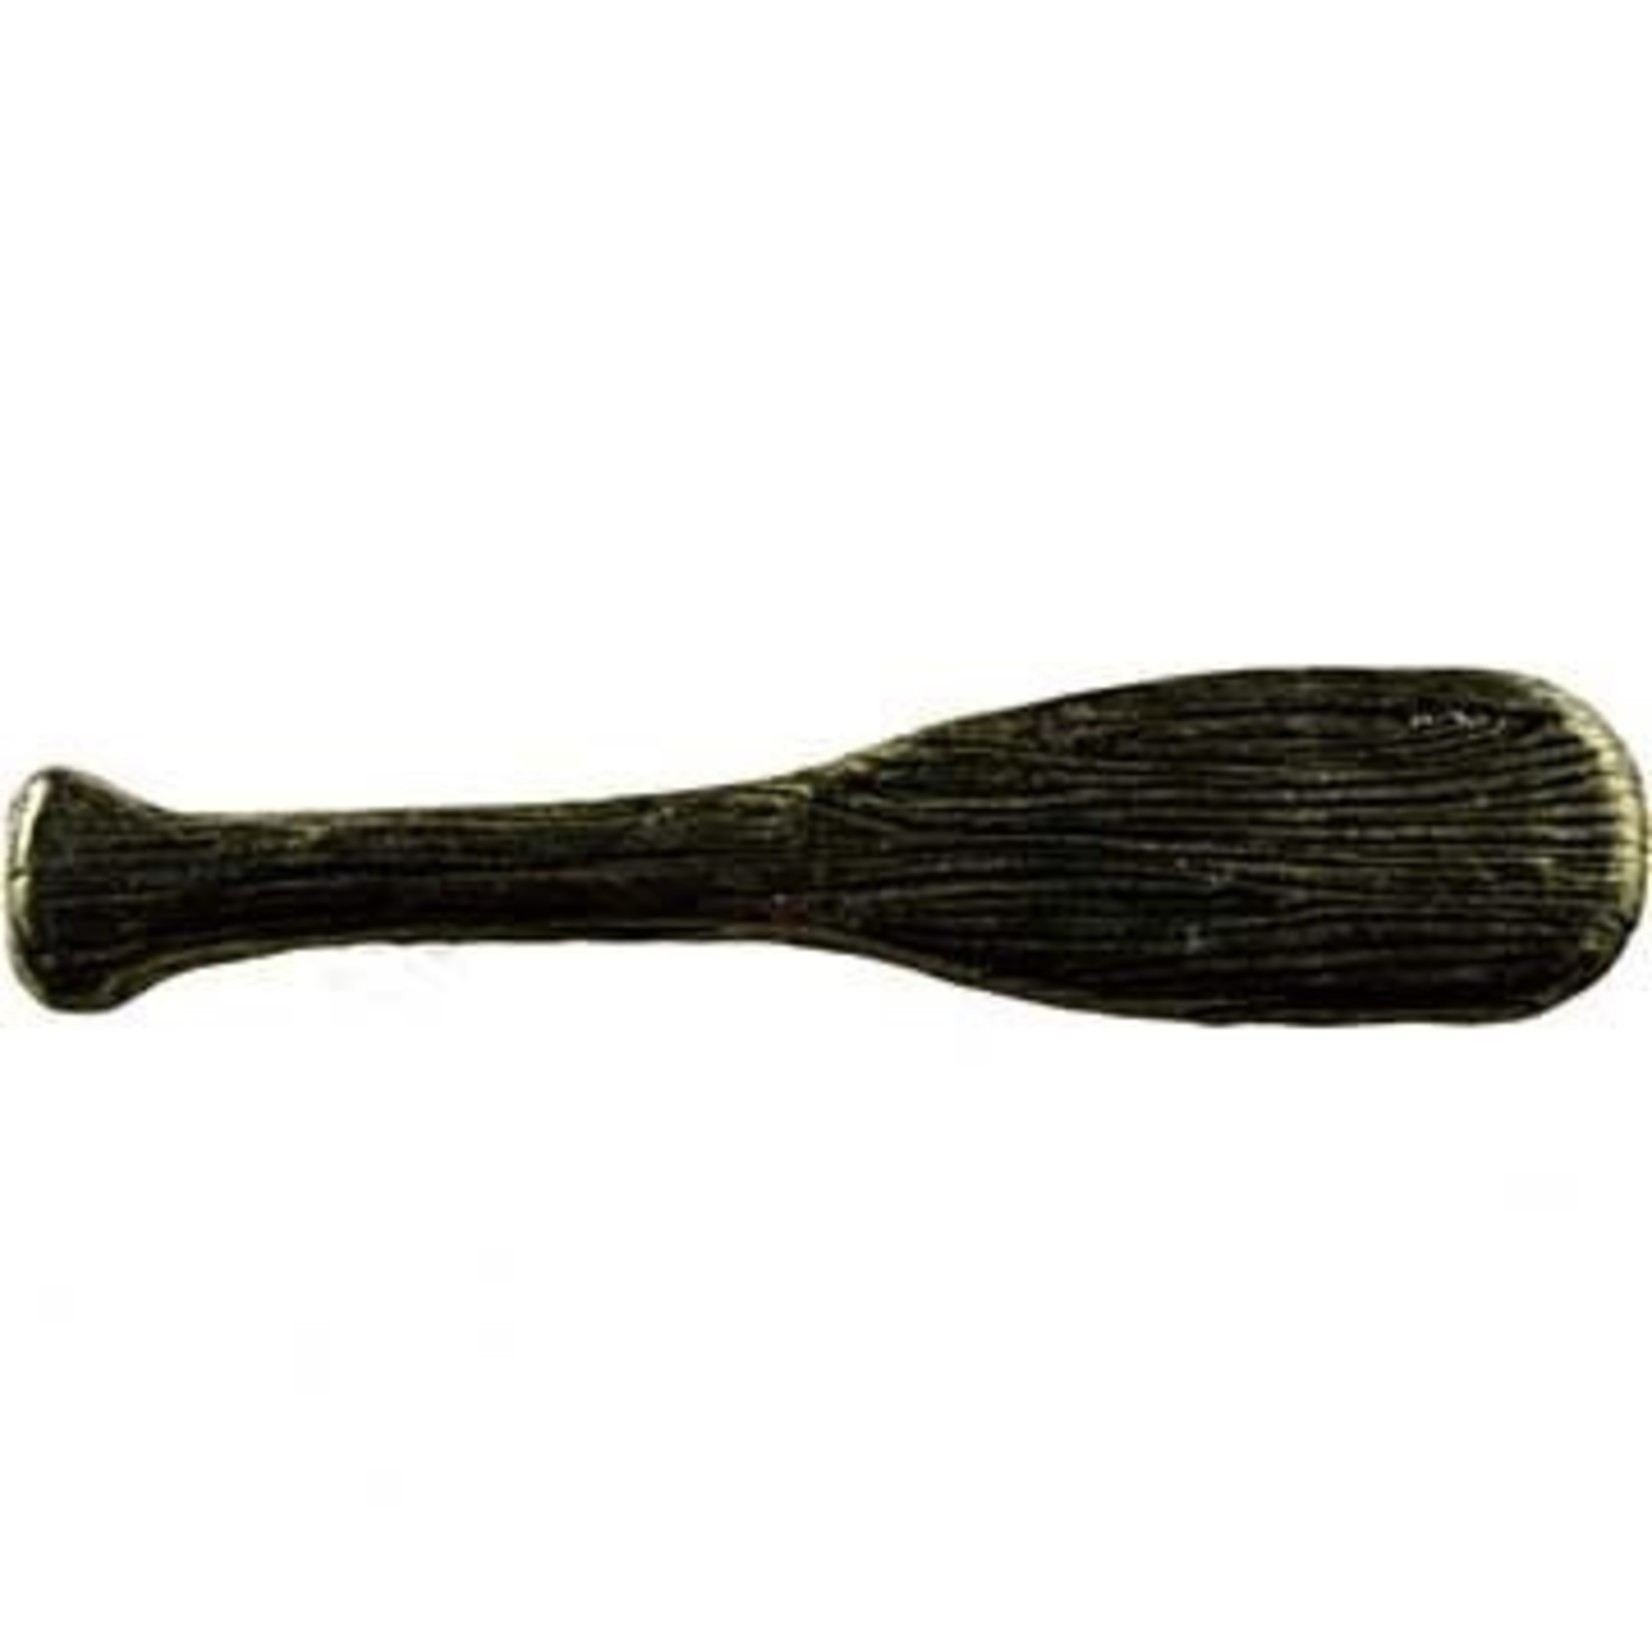 Canoe Paddle Pull - Bronzed Black